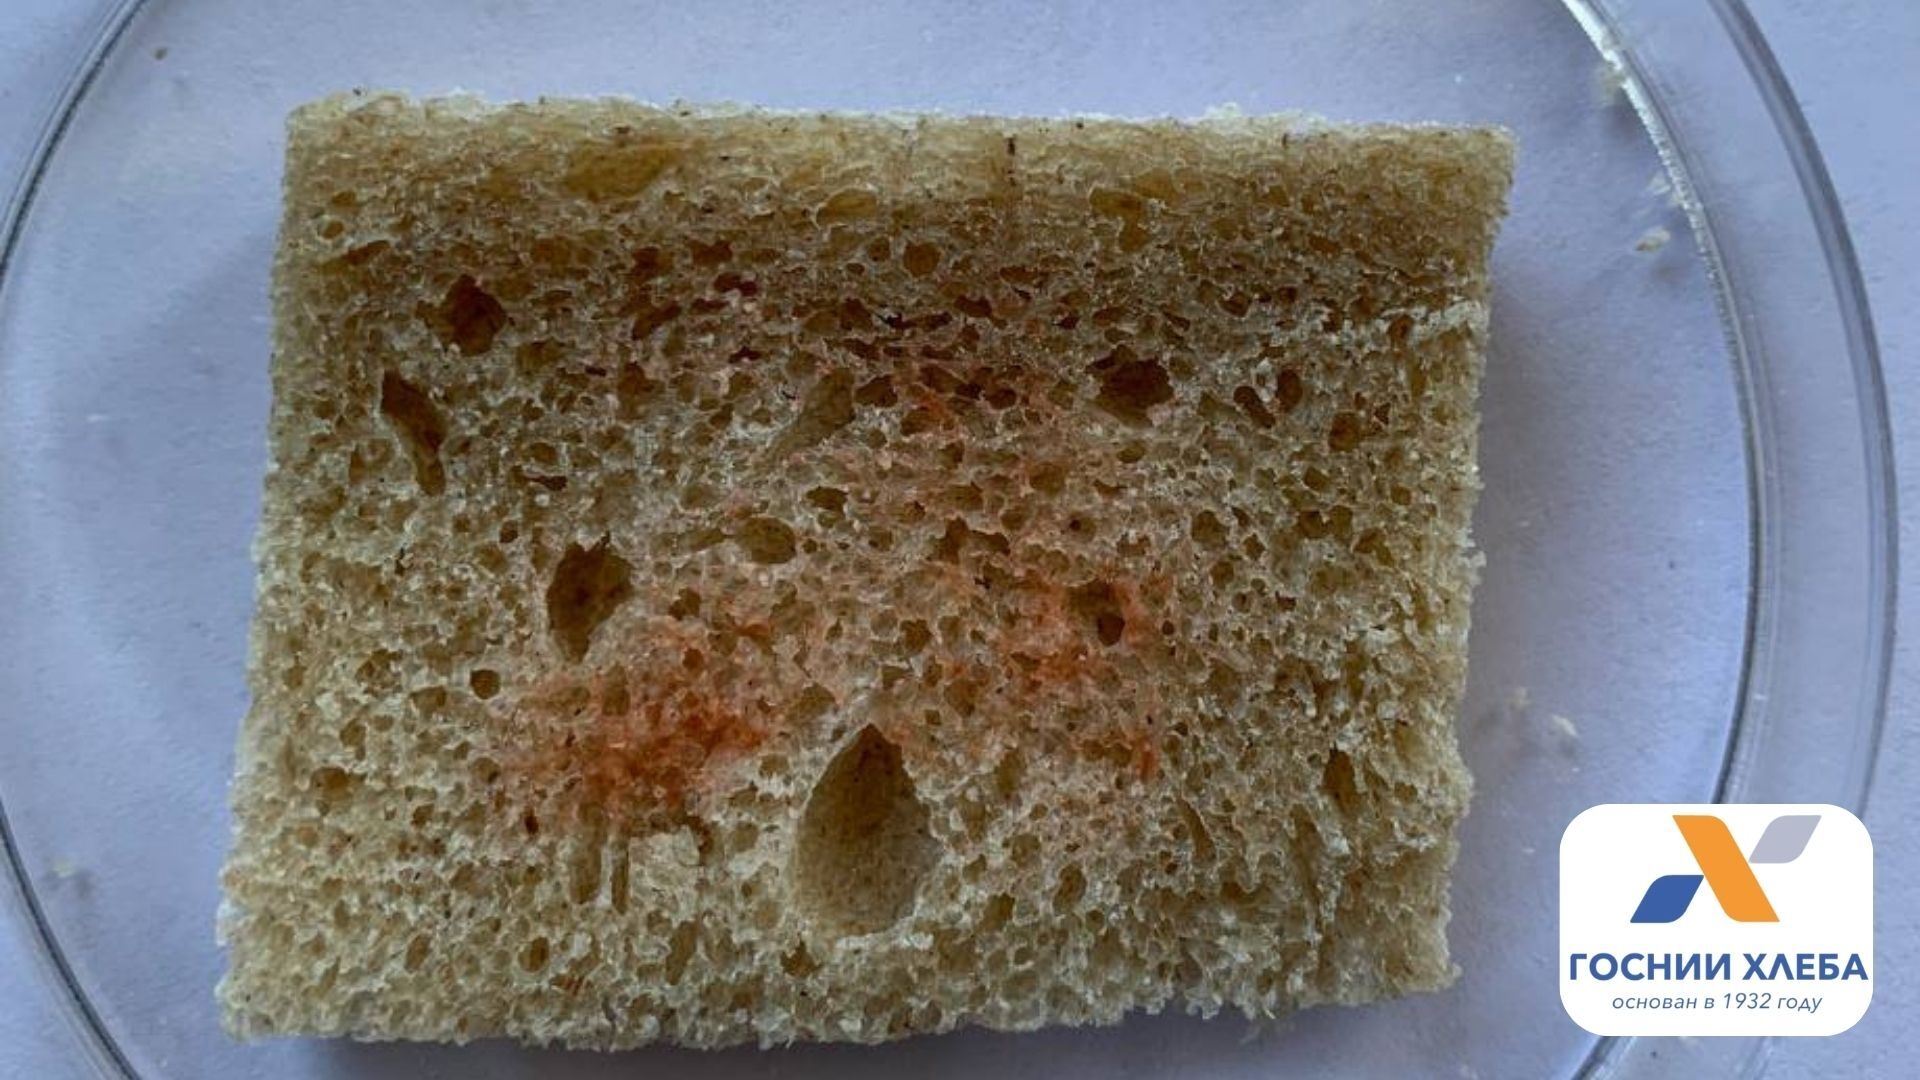 Пигментация хлеба вызывается разными видами бактерий